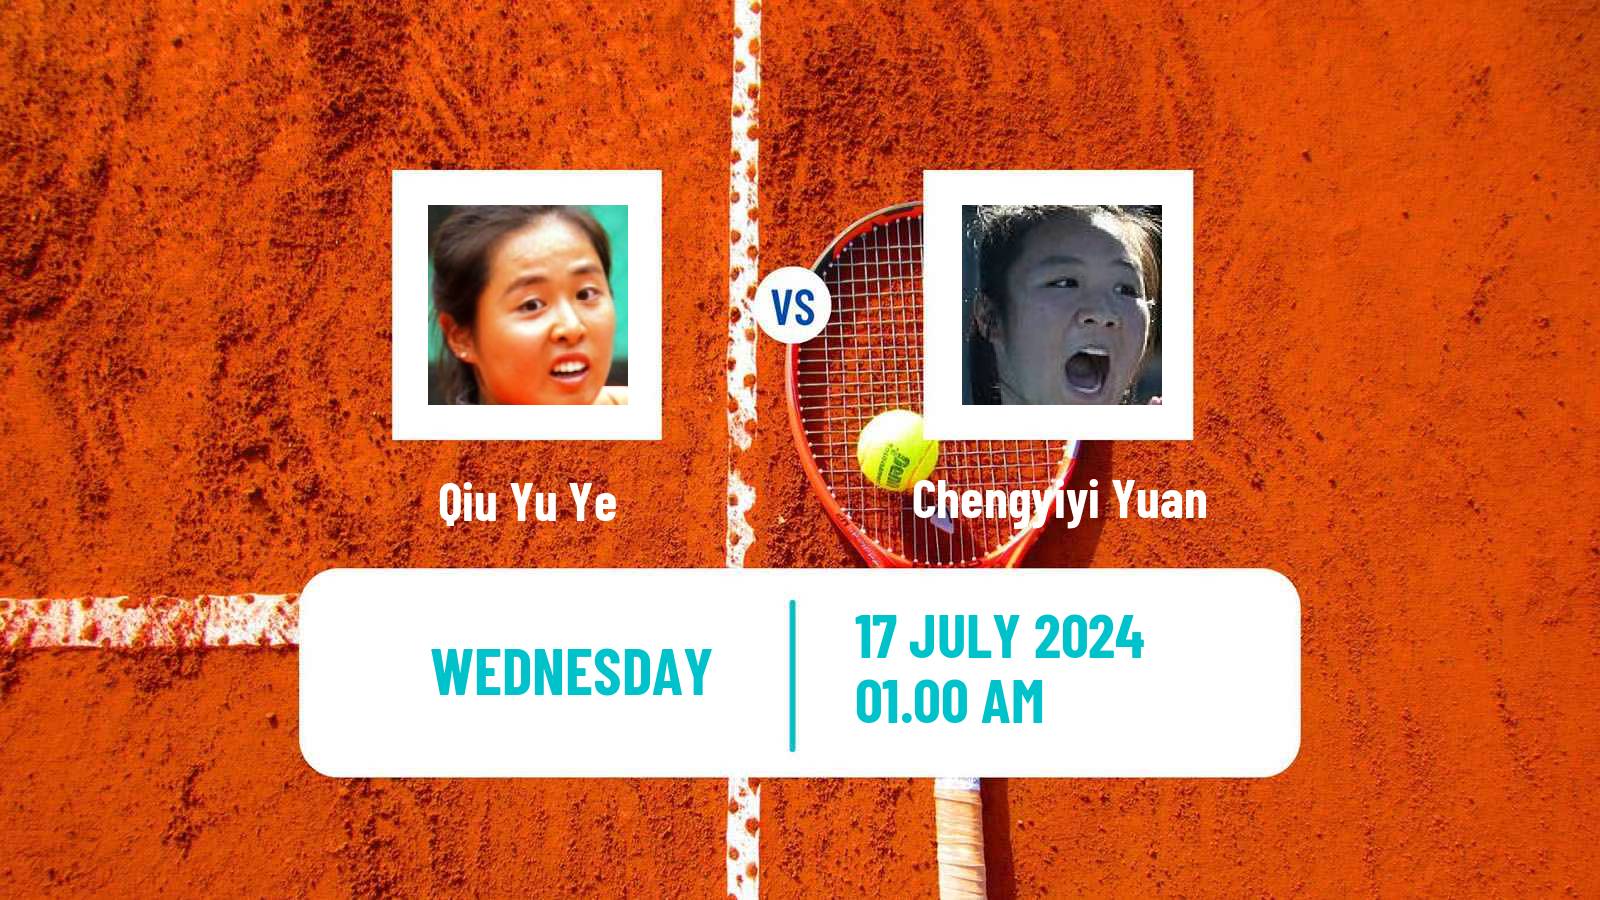 Tennis ITF W35 Tianjin 2 Women Qiu Yu Ye - Chengyiyi Yuan